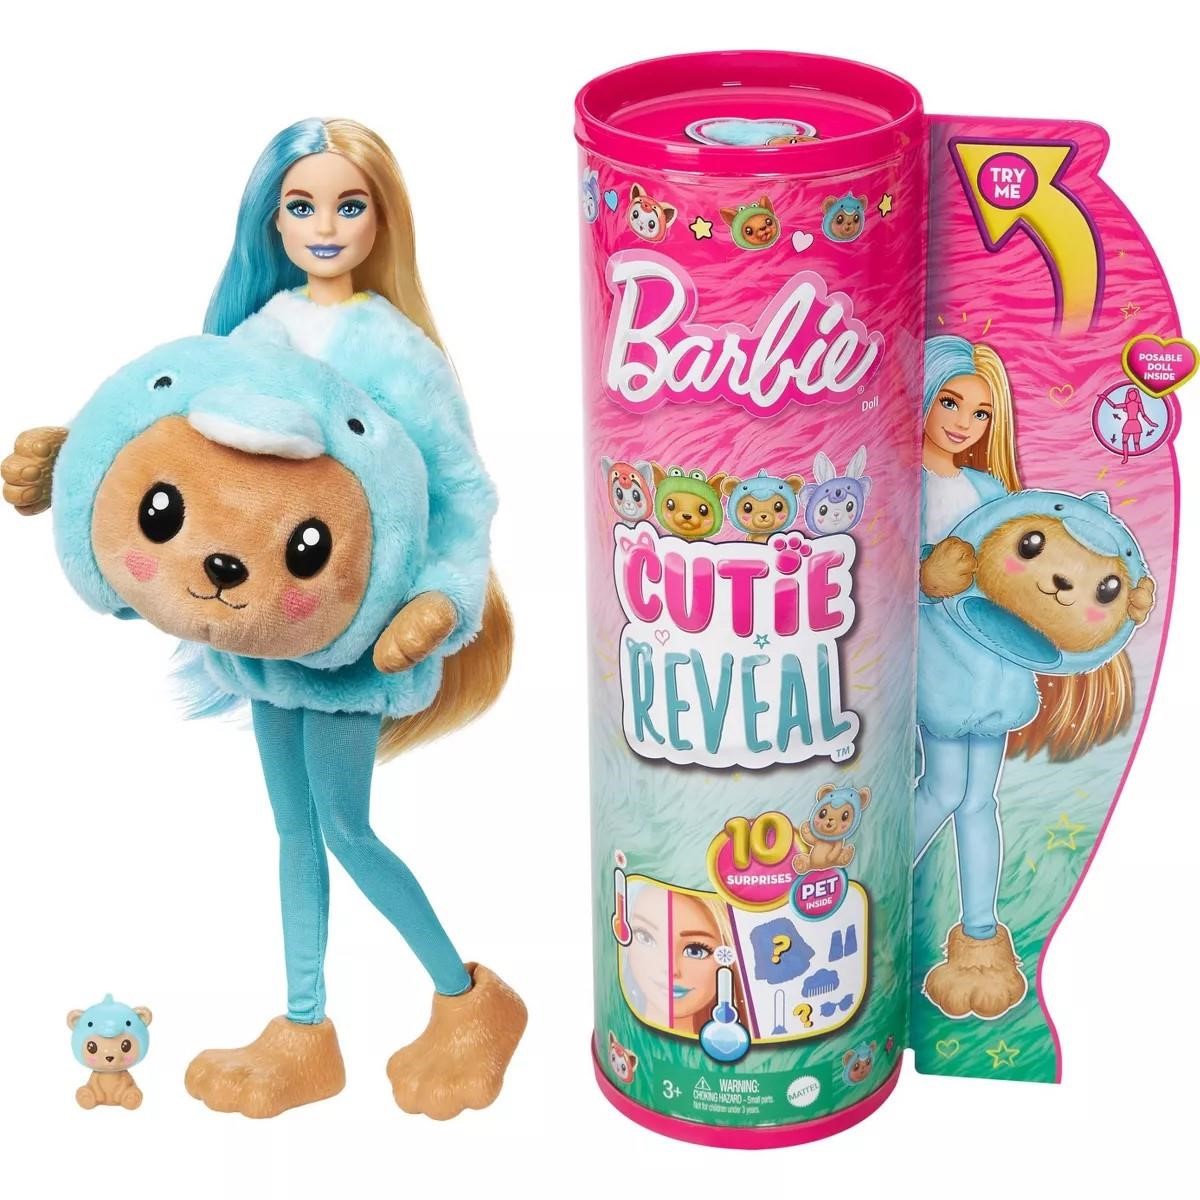 Barbie Cutie Reveal Doll Teddy Bear As Dolphin A98